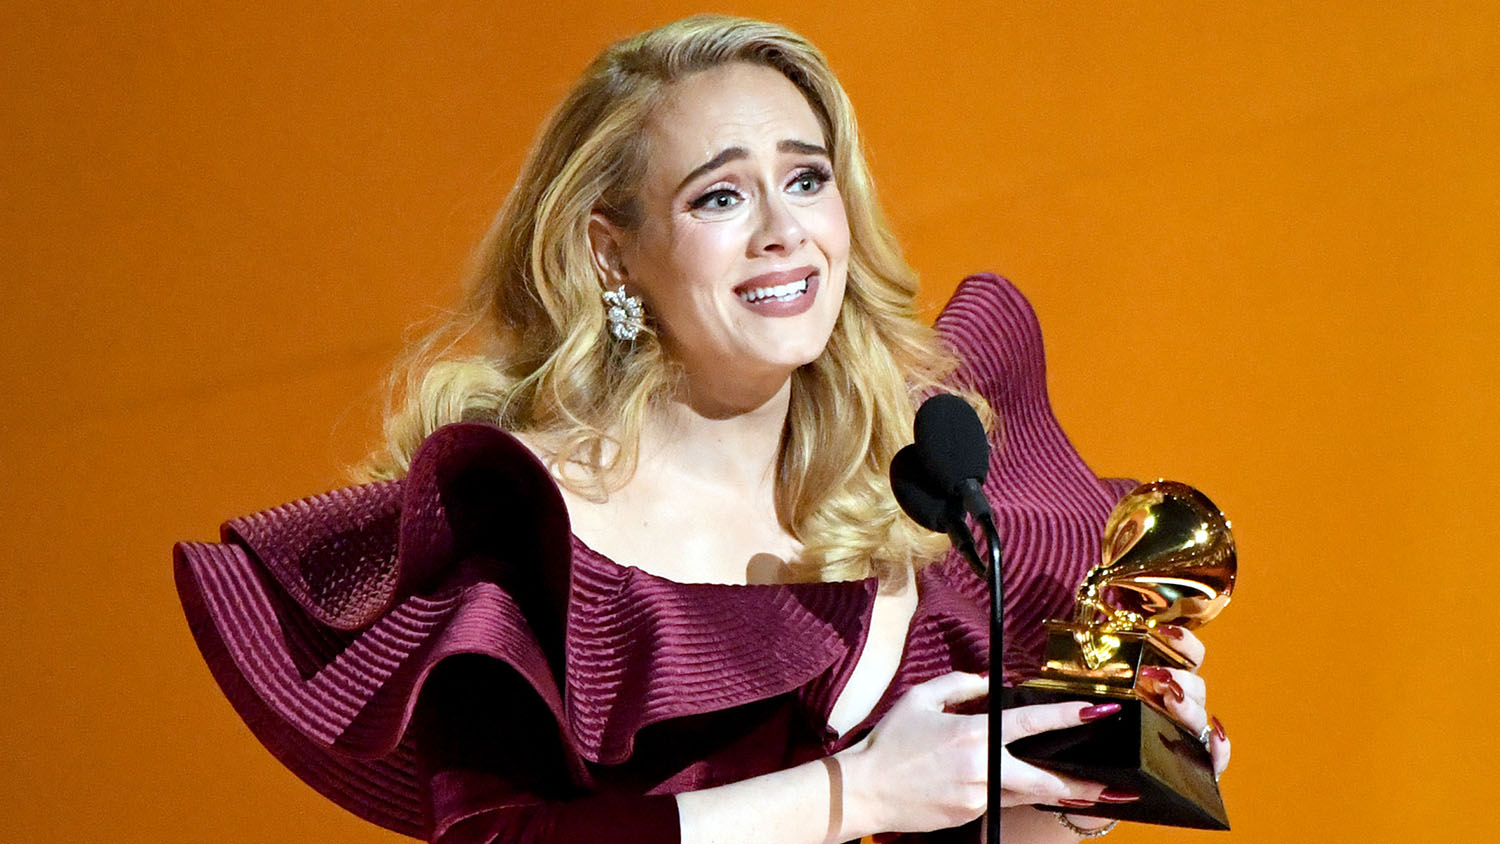 Adele winning a trophy